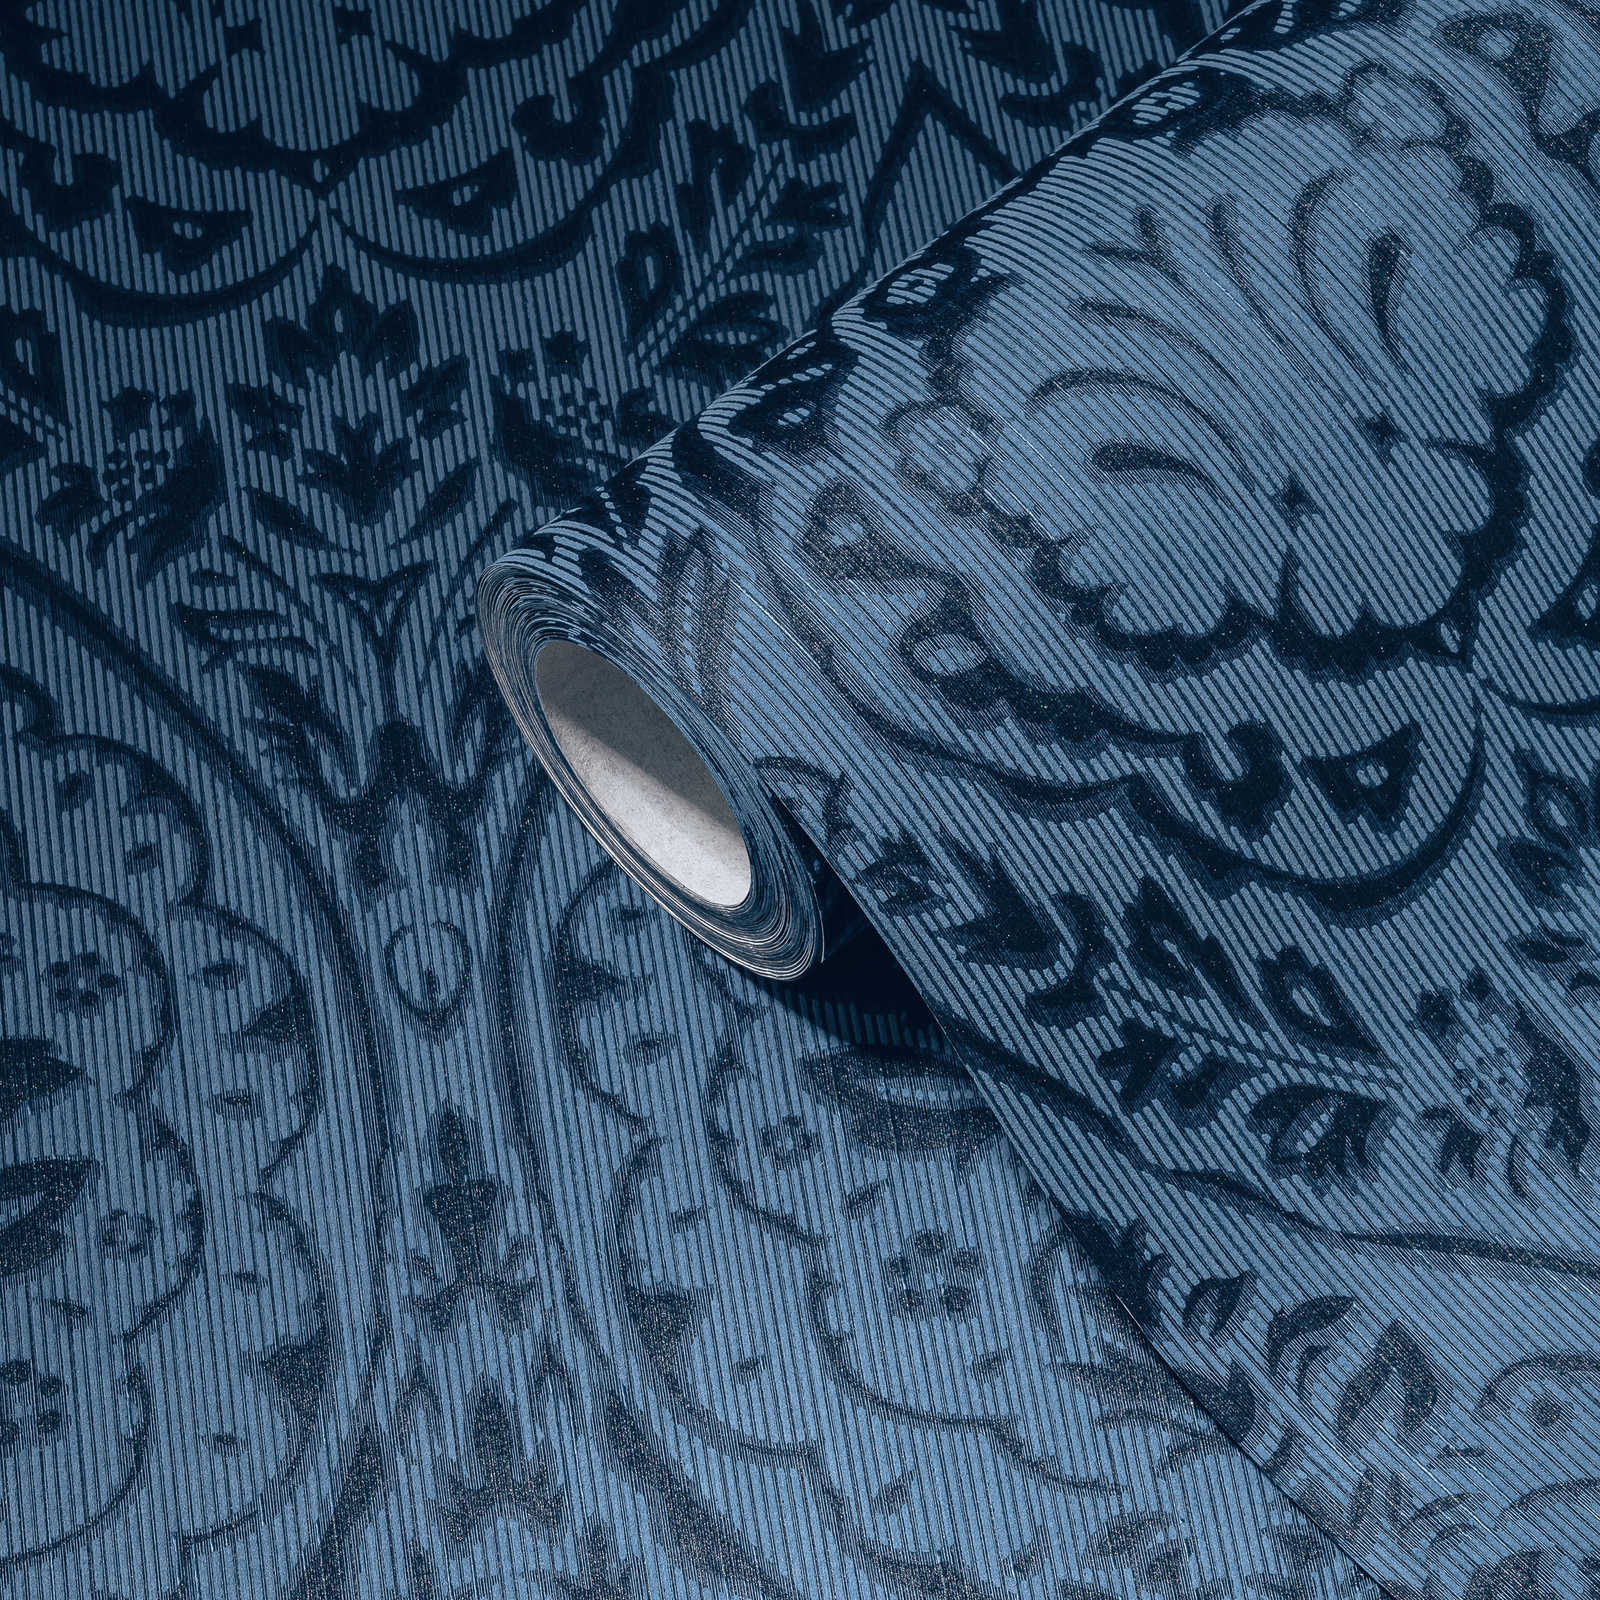             papel pintado no tejido adornos florales - azul
        